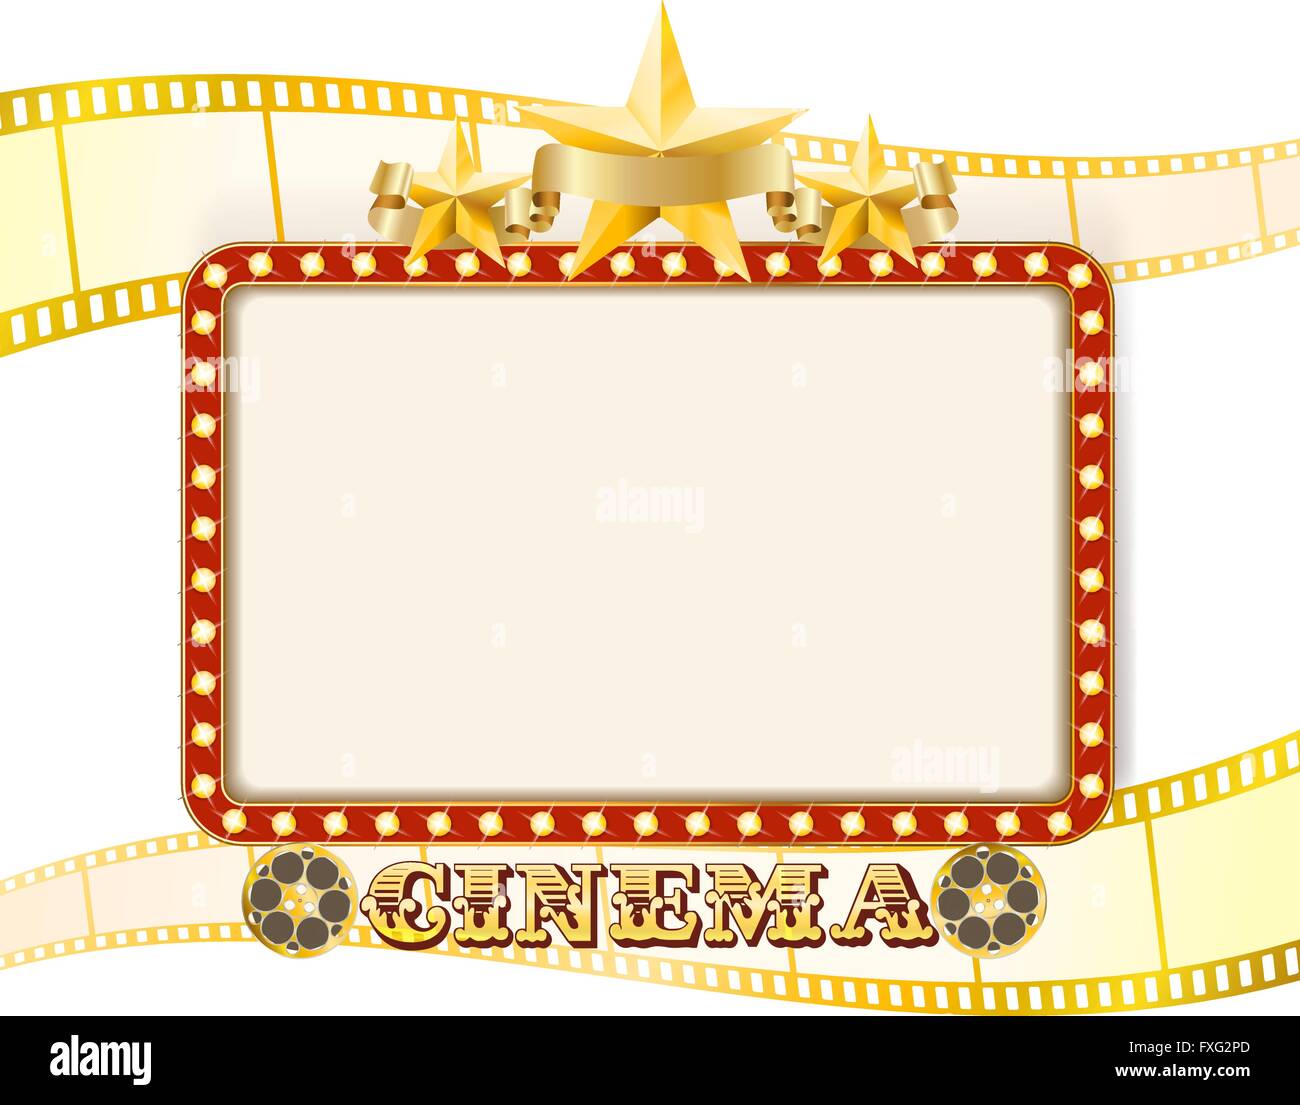 Retro-Kino Zeichen Banner mit Lichtern, Stars, Film-Streifen und rollt. Vektor Stock Vektor